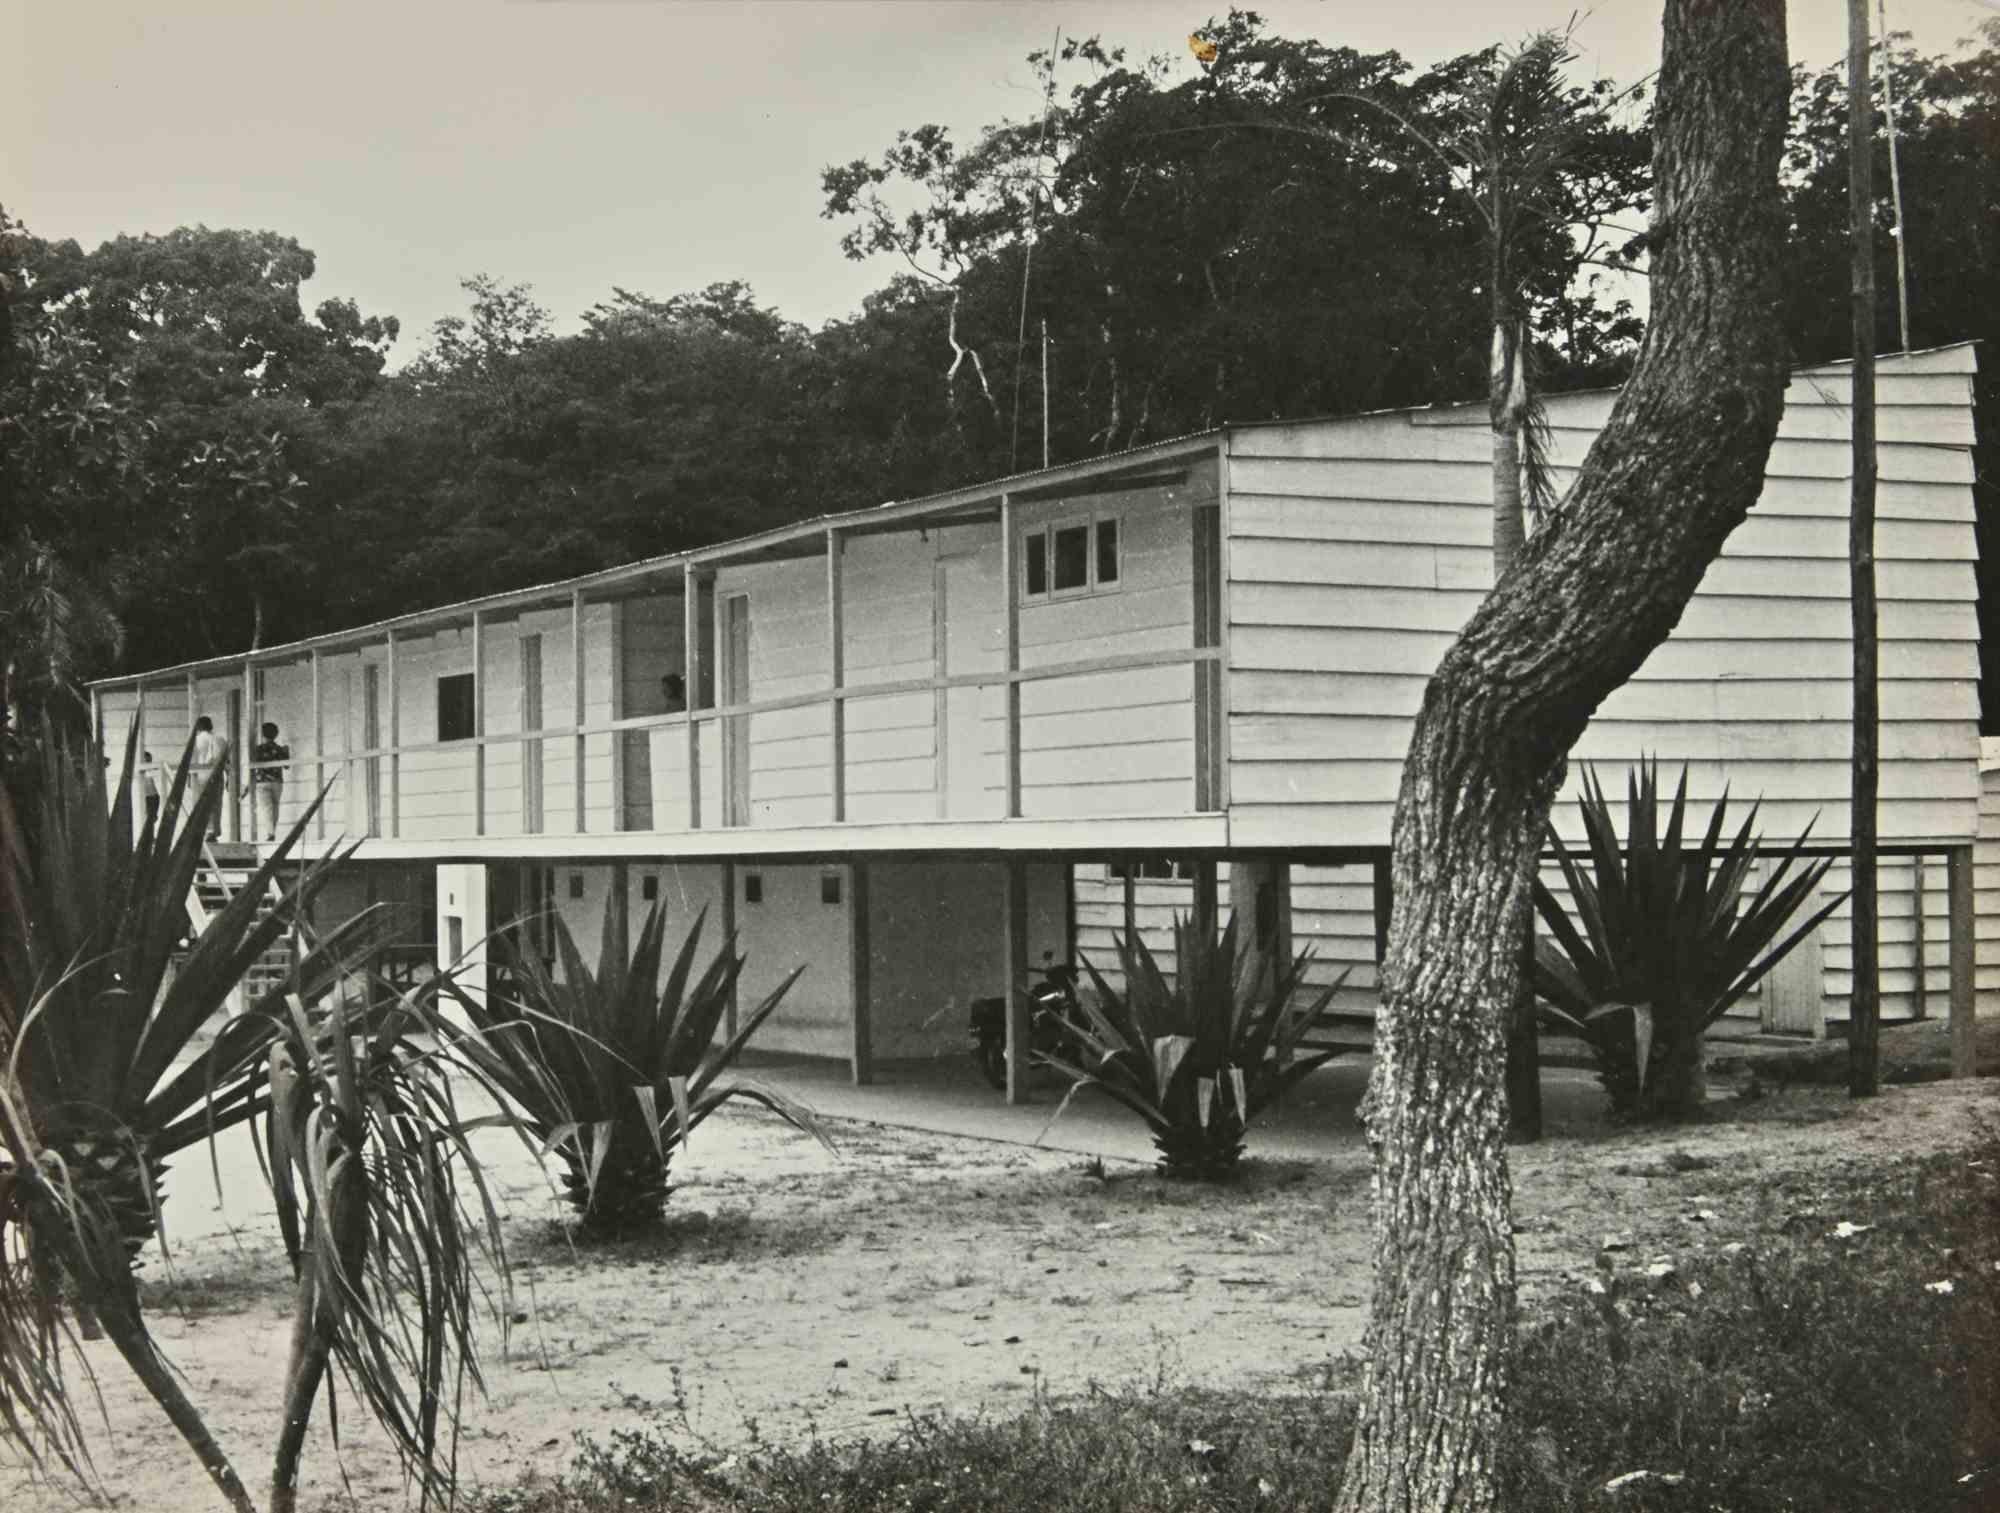 Unknown Landscape Photograph - Pilotis House - Beach in Brazil - Vintage Photo - 1970s